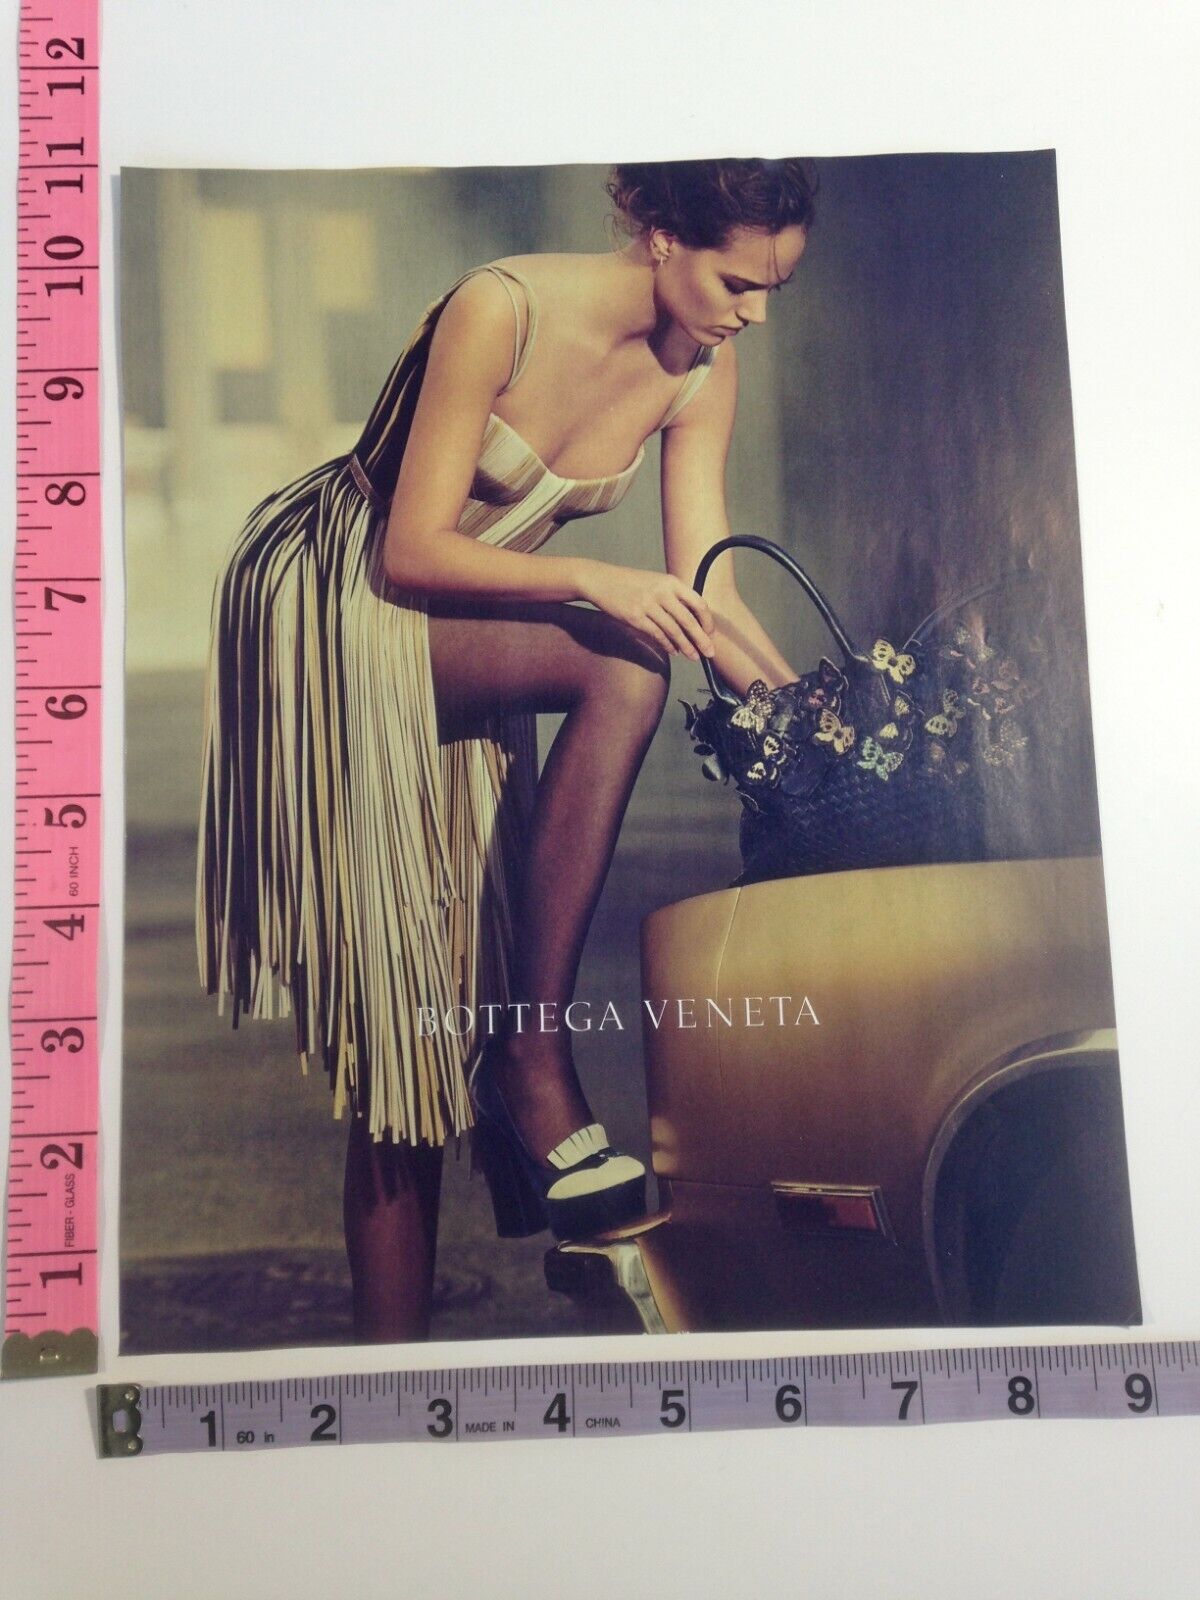 Print Ad - Freja Beha Erichsen photo Bottega Veneta model legs high heel shoes